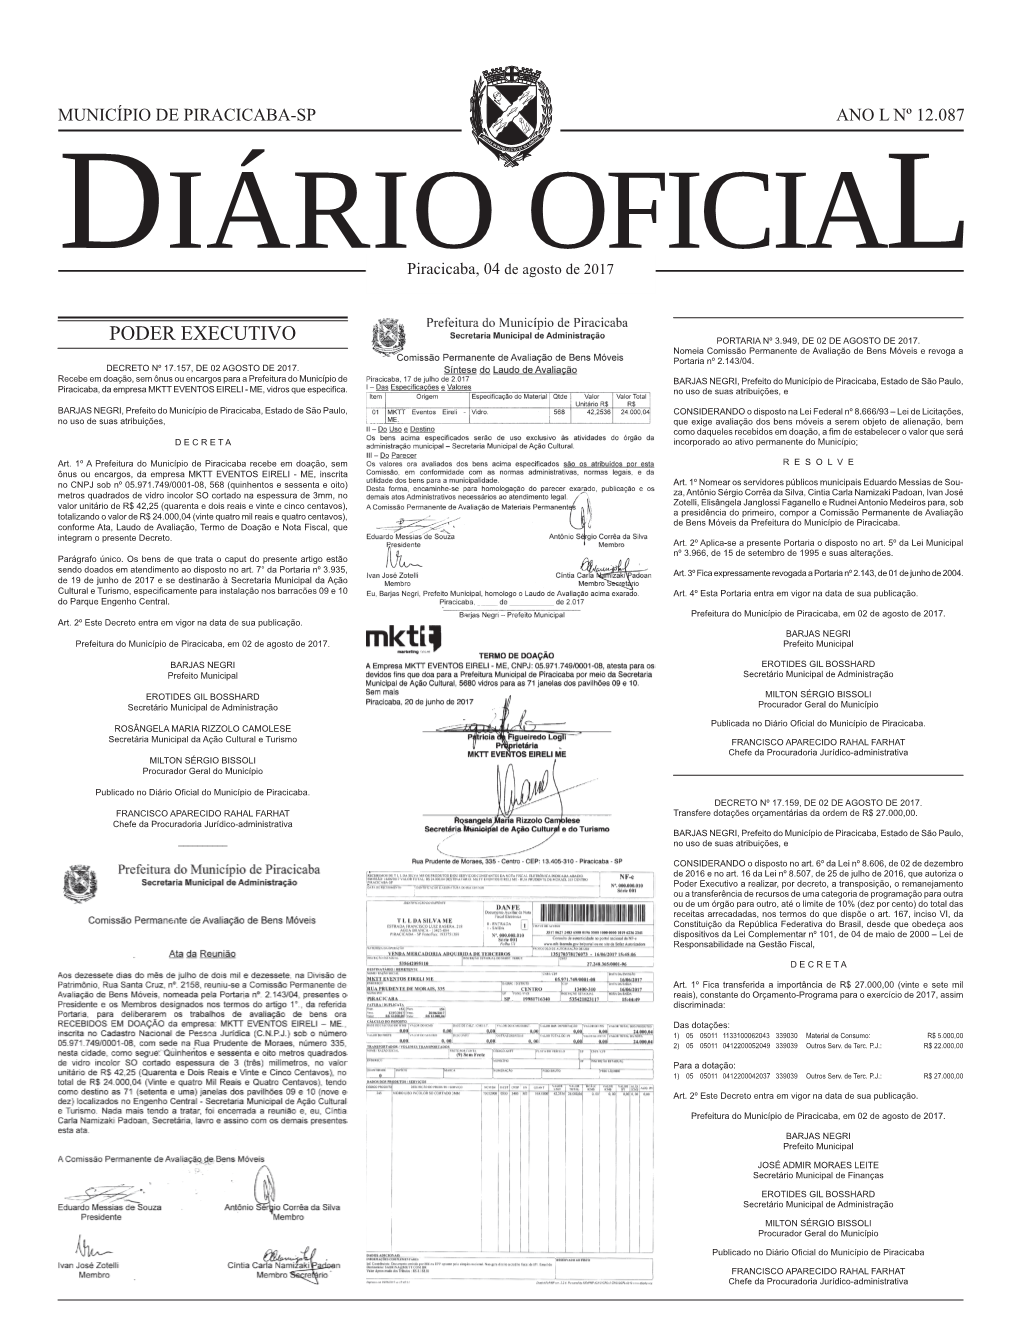 Download Diário Oficial